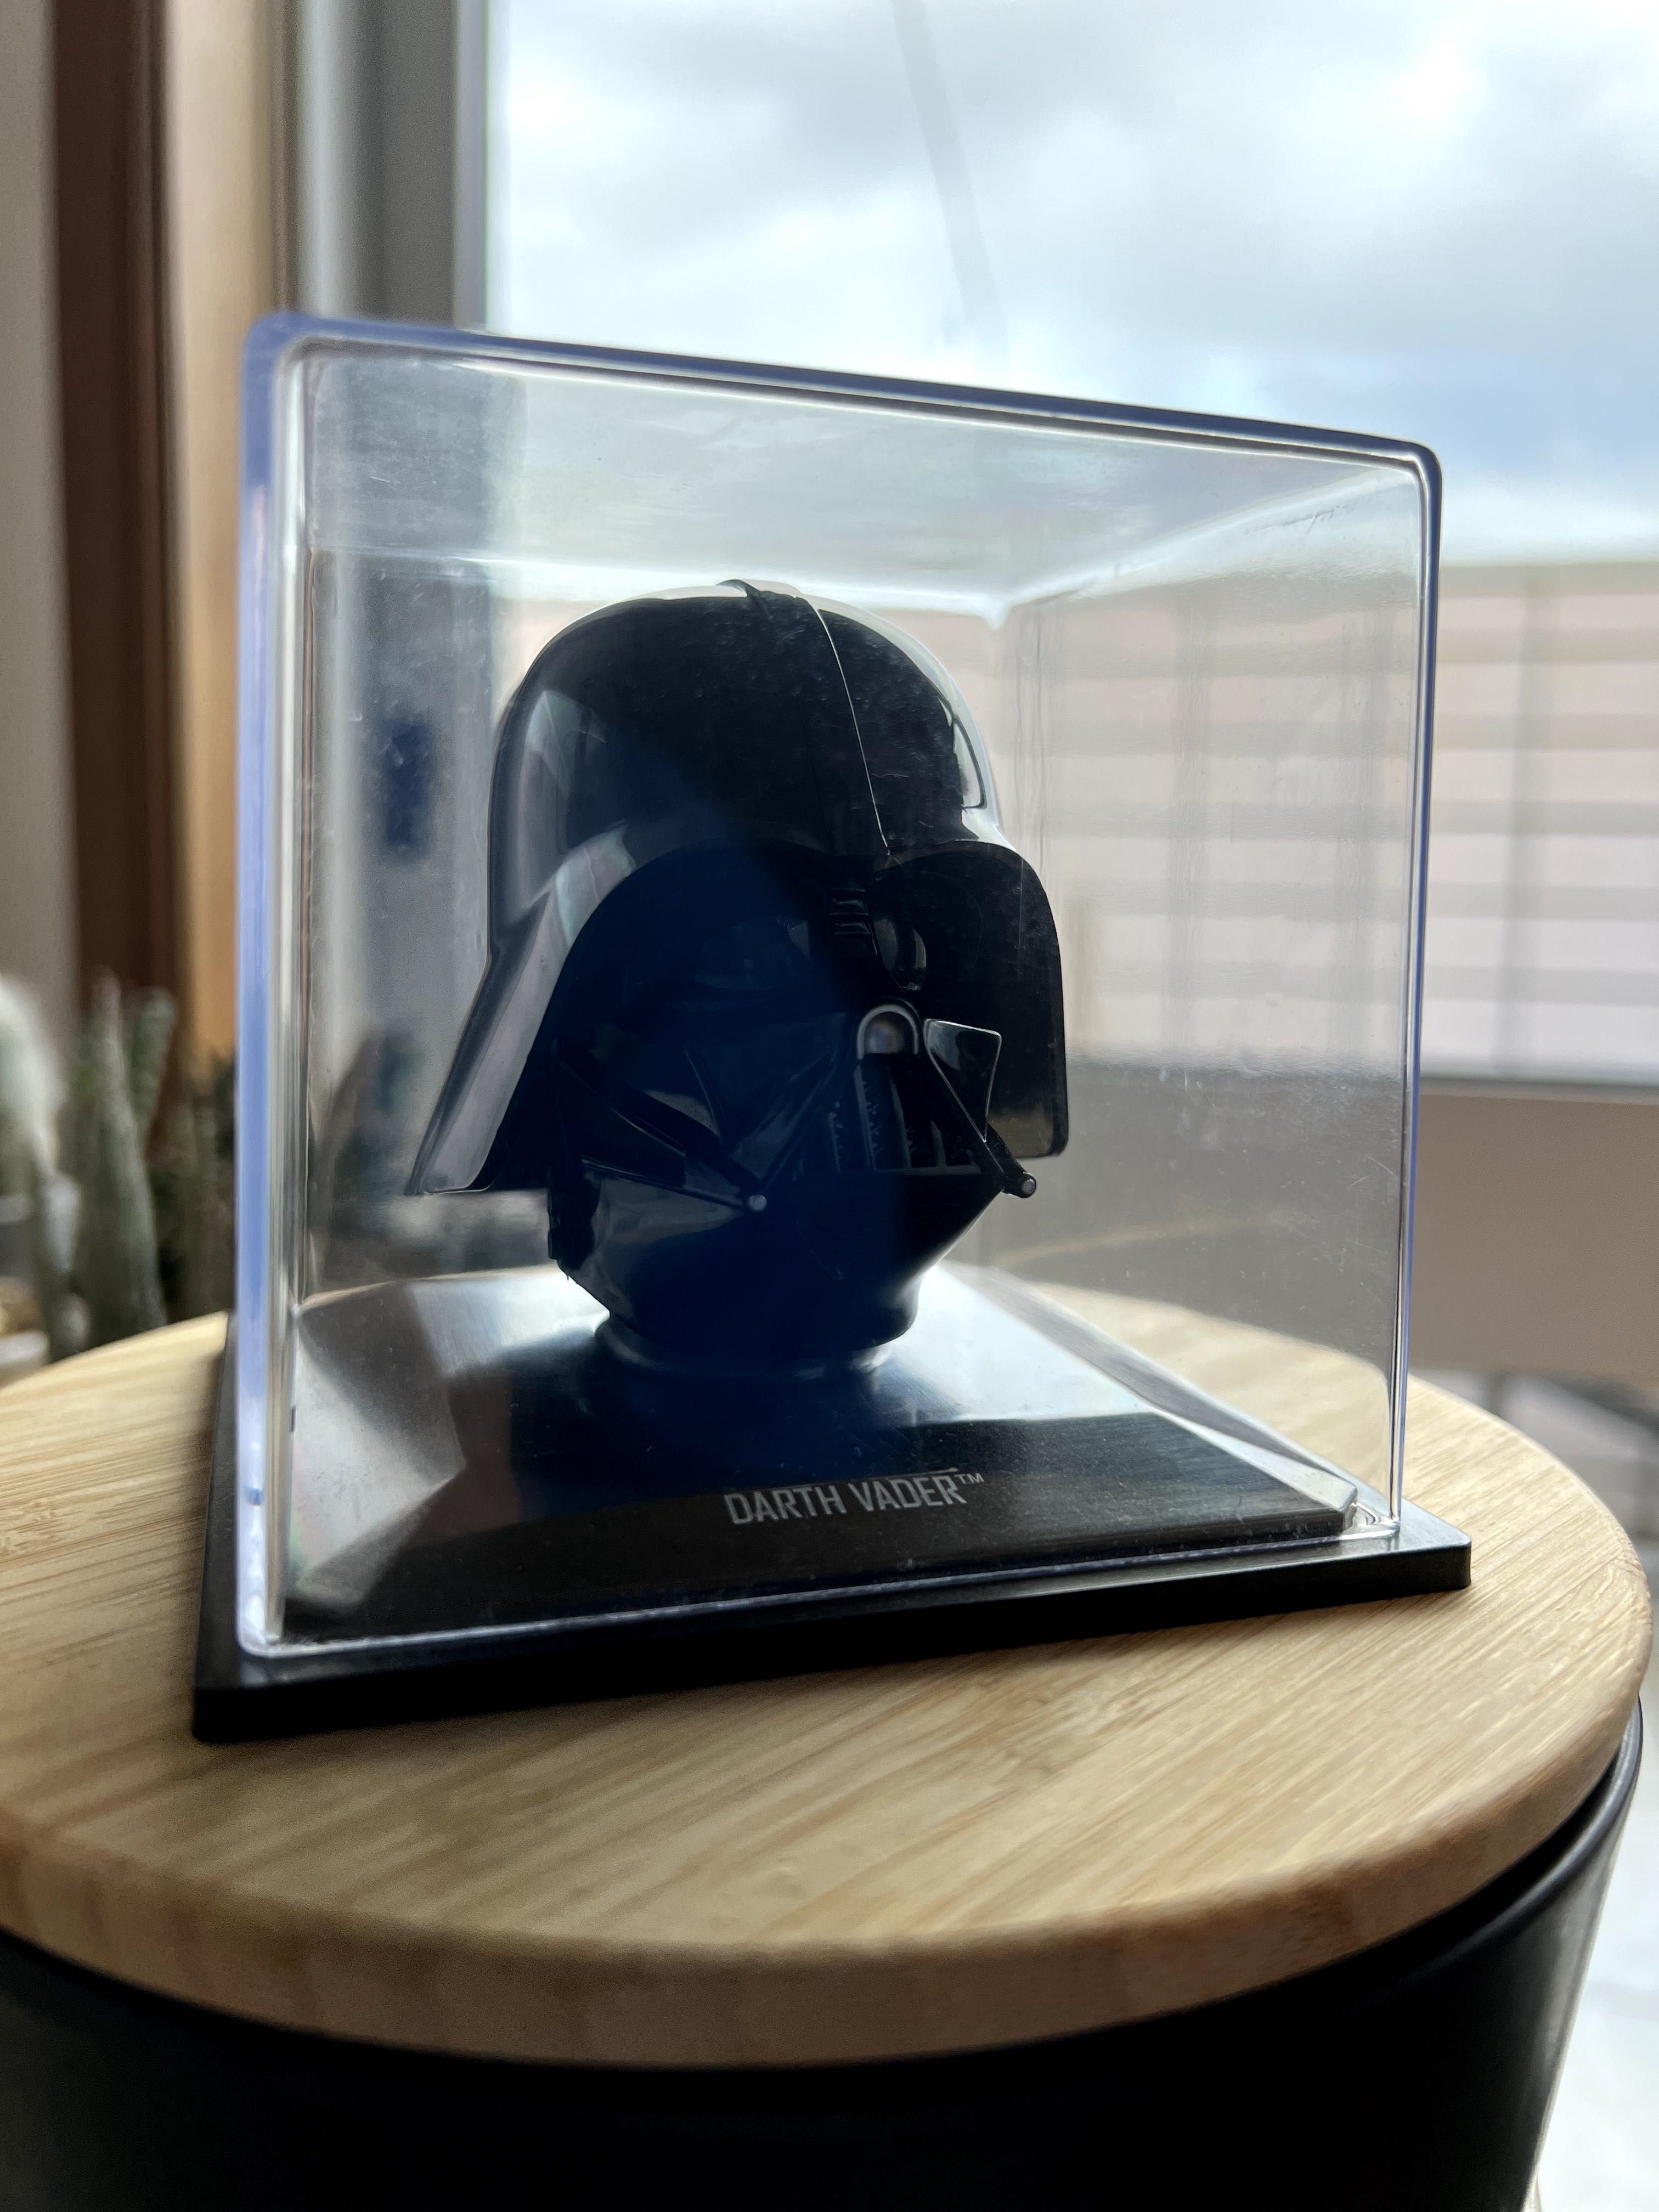 Mini Darth Vader Helmet